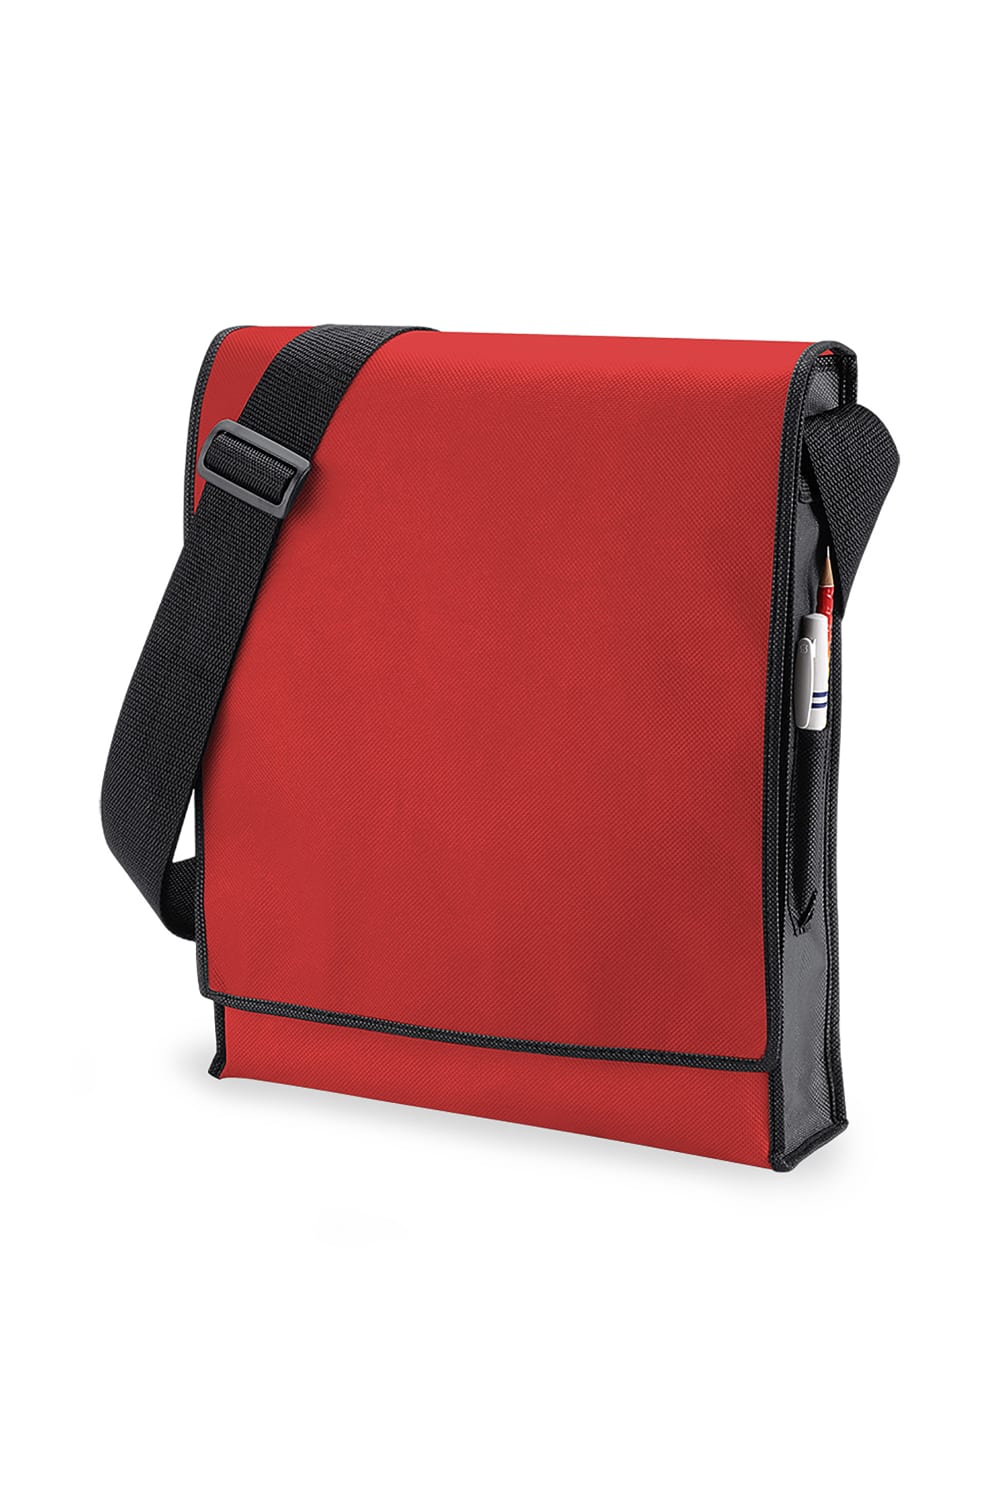 Budget Vertical Messenger Bag 10 Liters, Pack Of 2 - Red/ Black